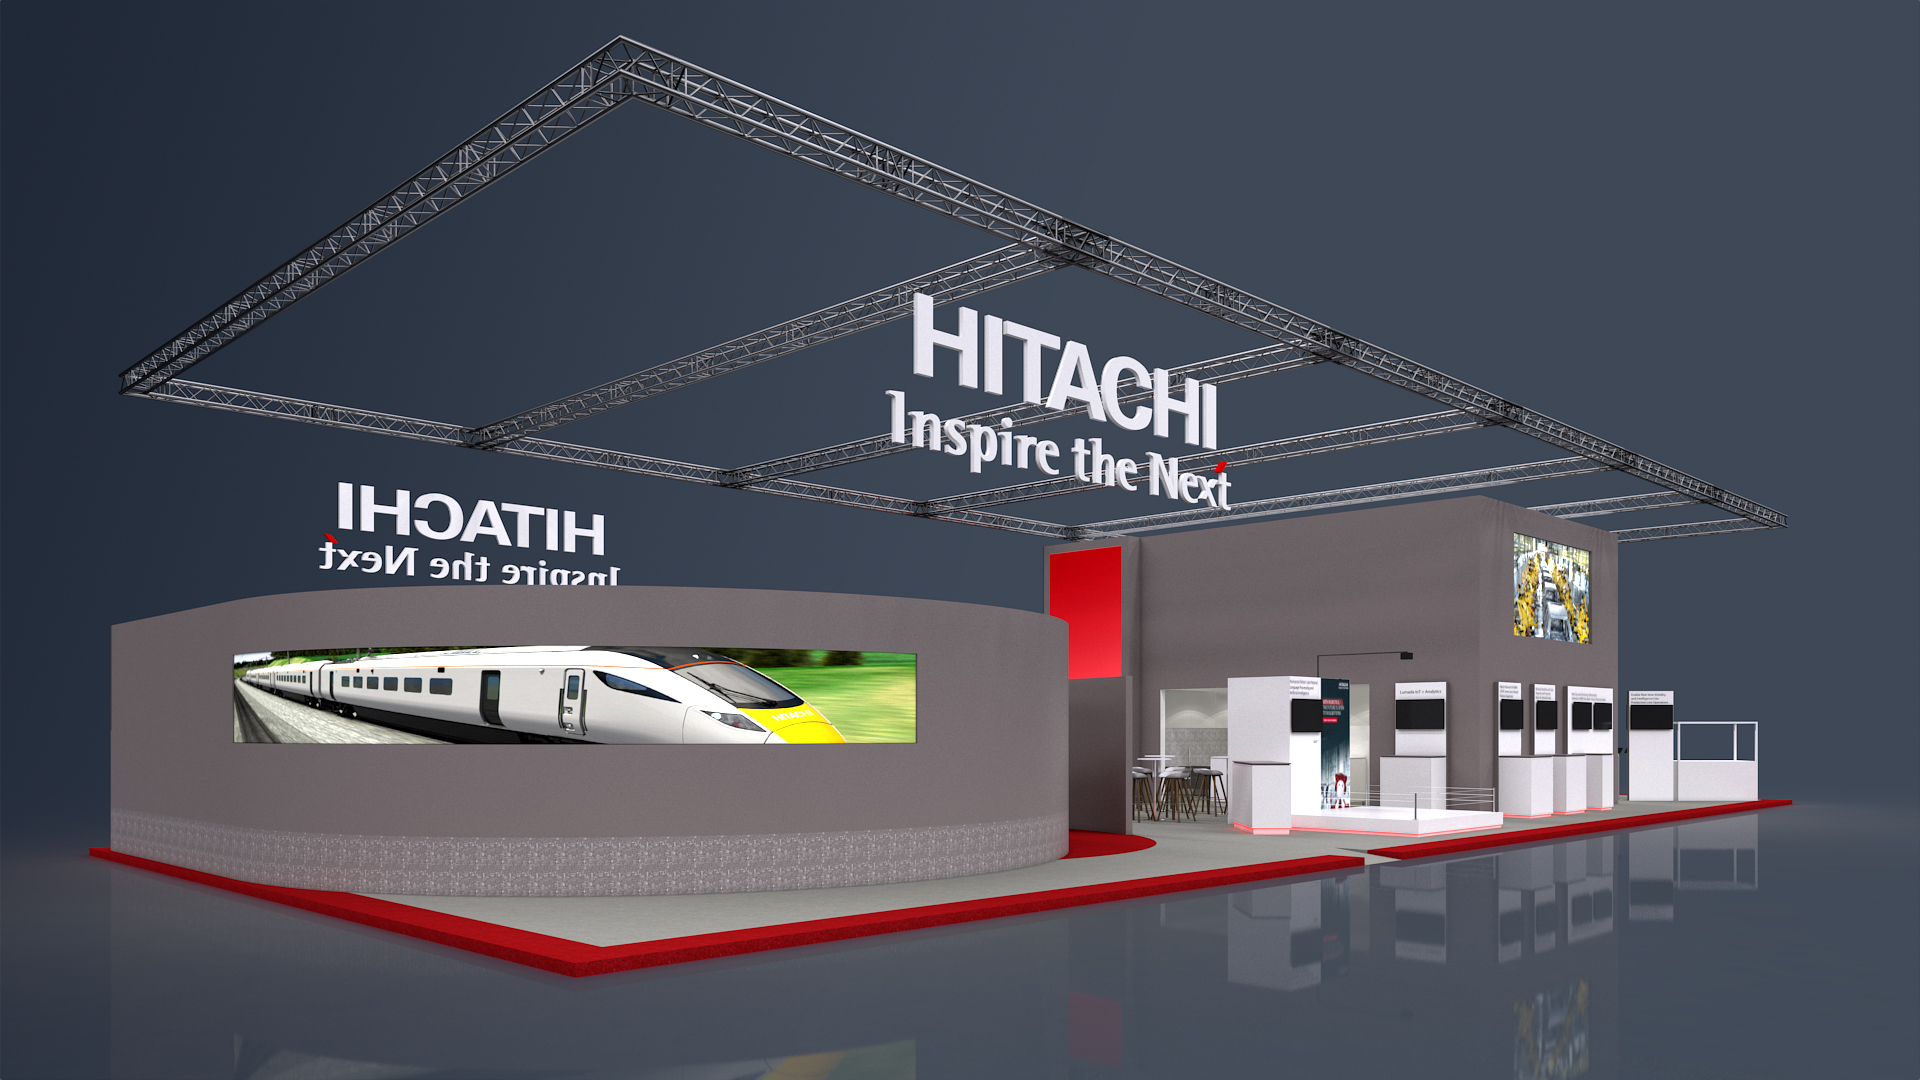 2018 ontwerp Hitachi inspire